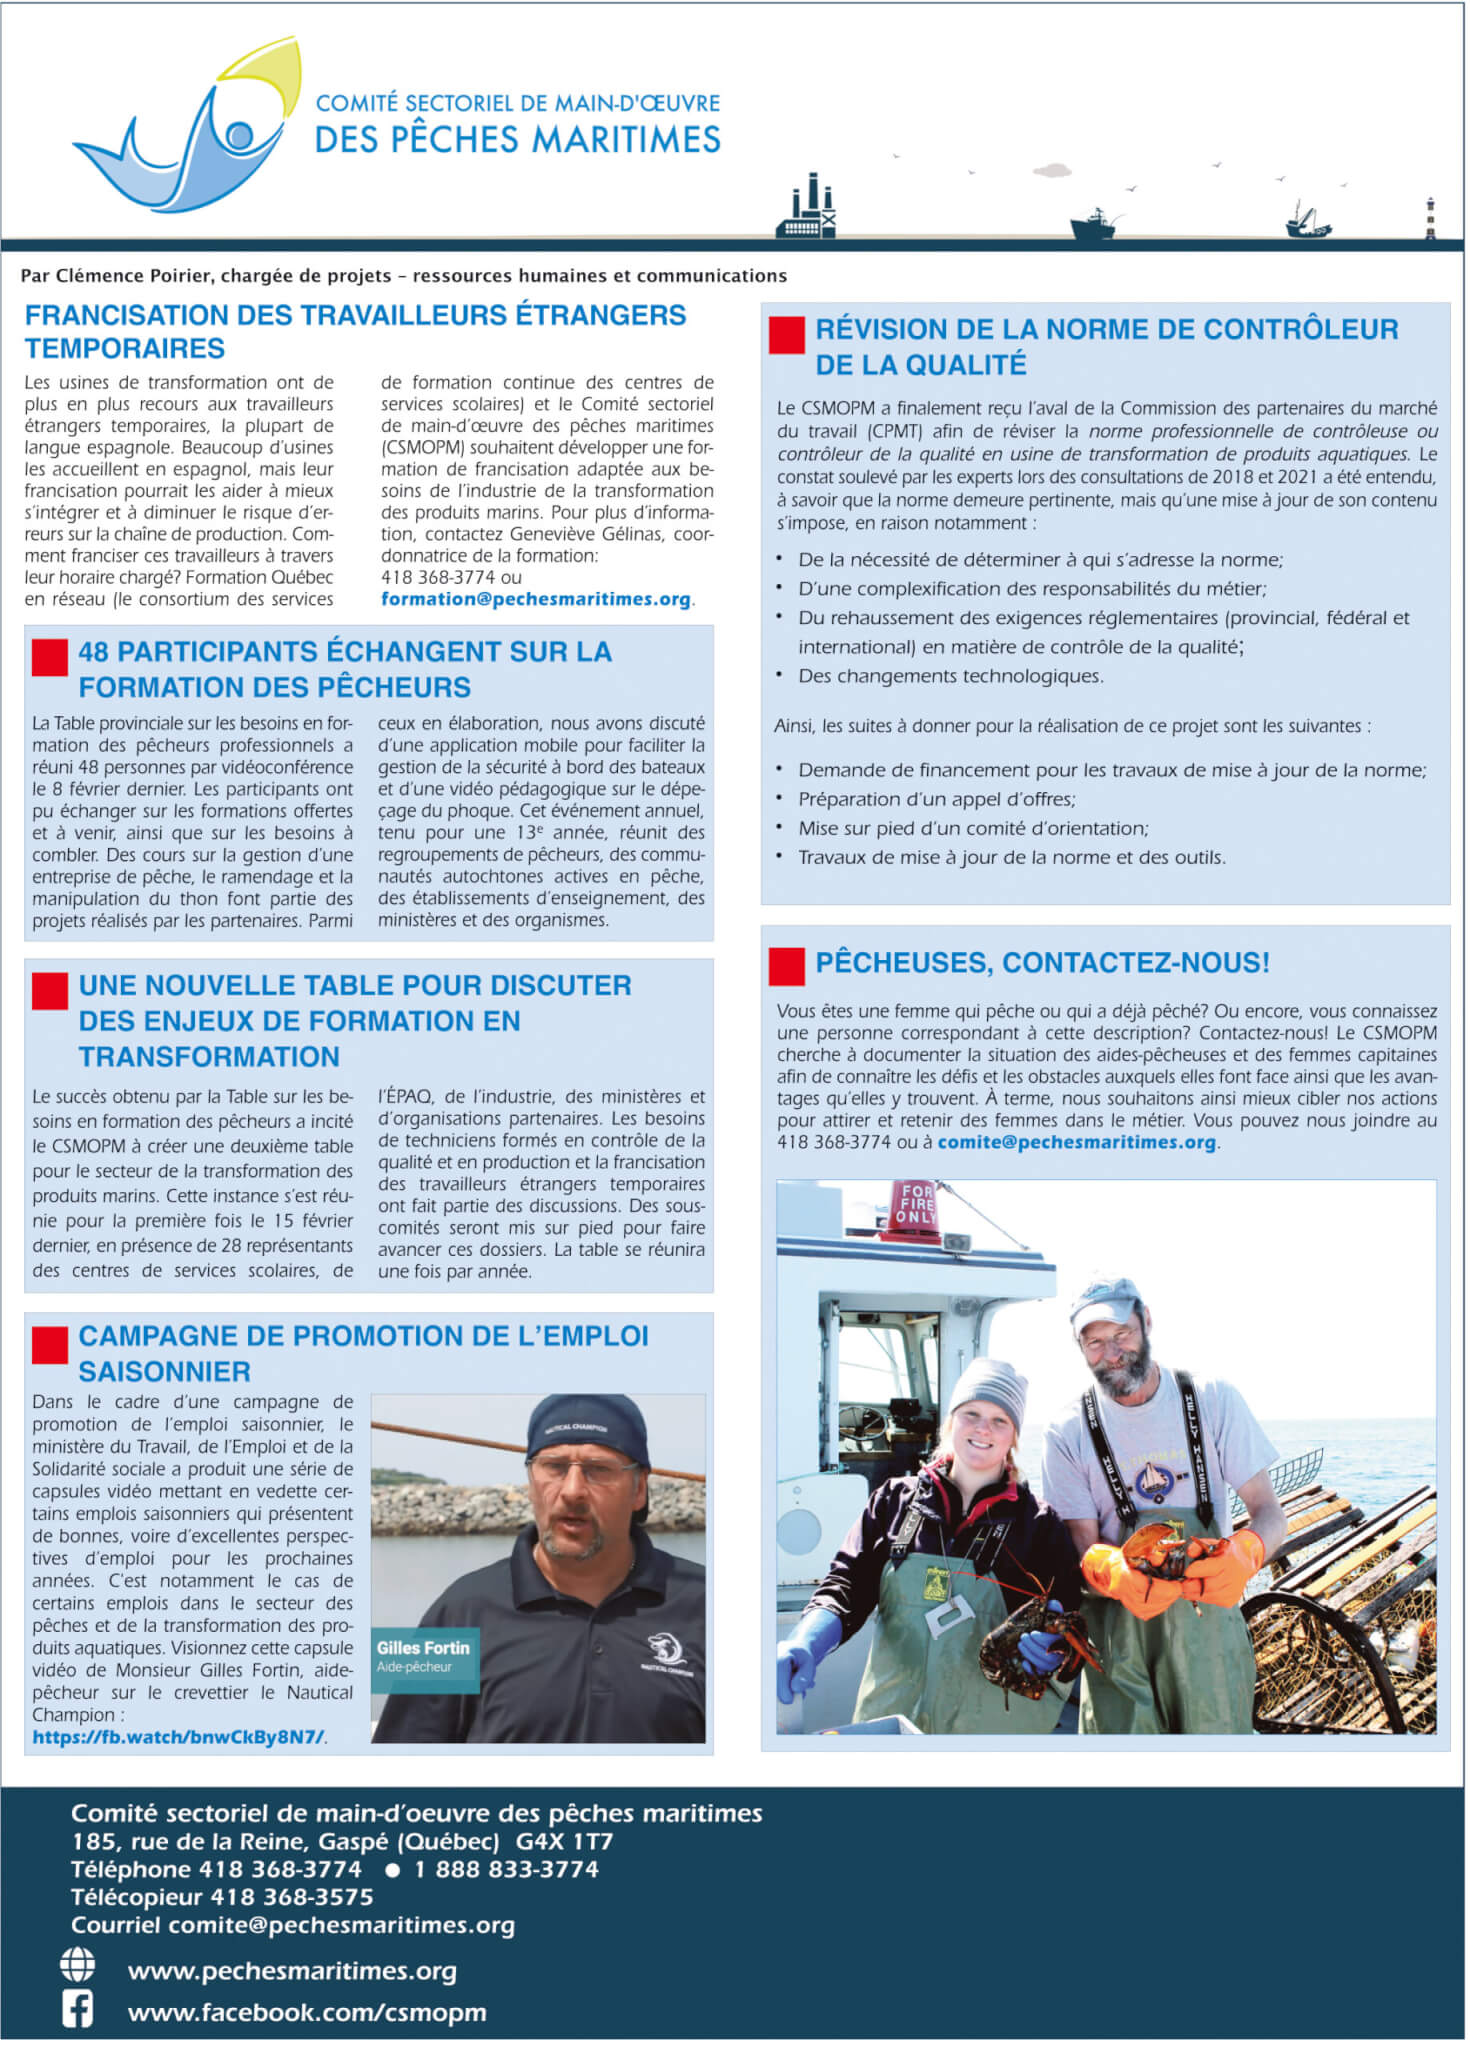 Comité sectoriel de main-d'oeuvre des pêches maritimes (CSMOPM)